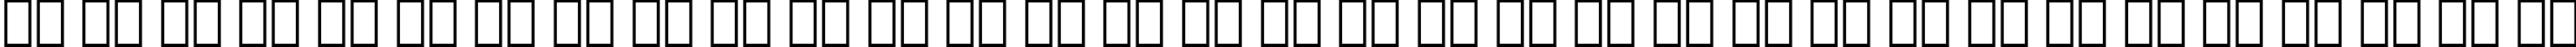 Пример написания русского алфавита шрифтом Dutch 801 Bold Italic BT